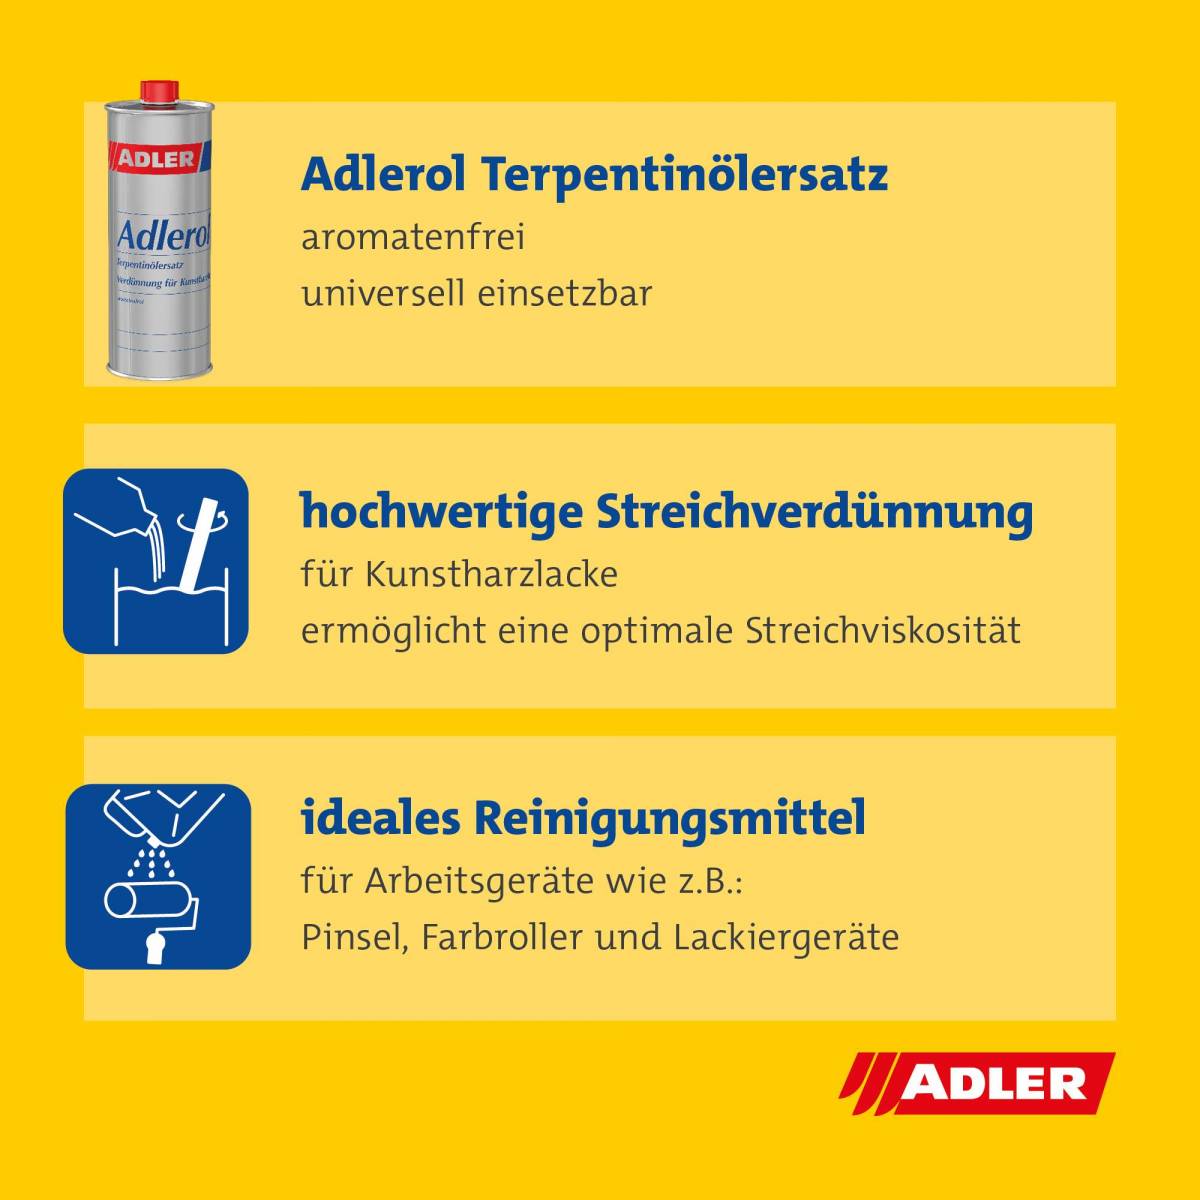 adlerol_terpentinersatz_vorschau